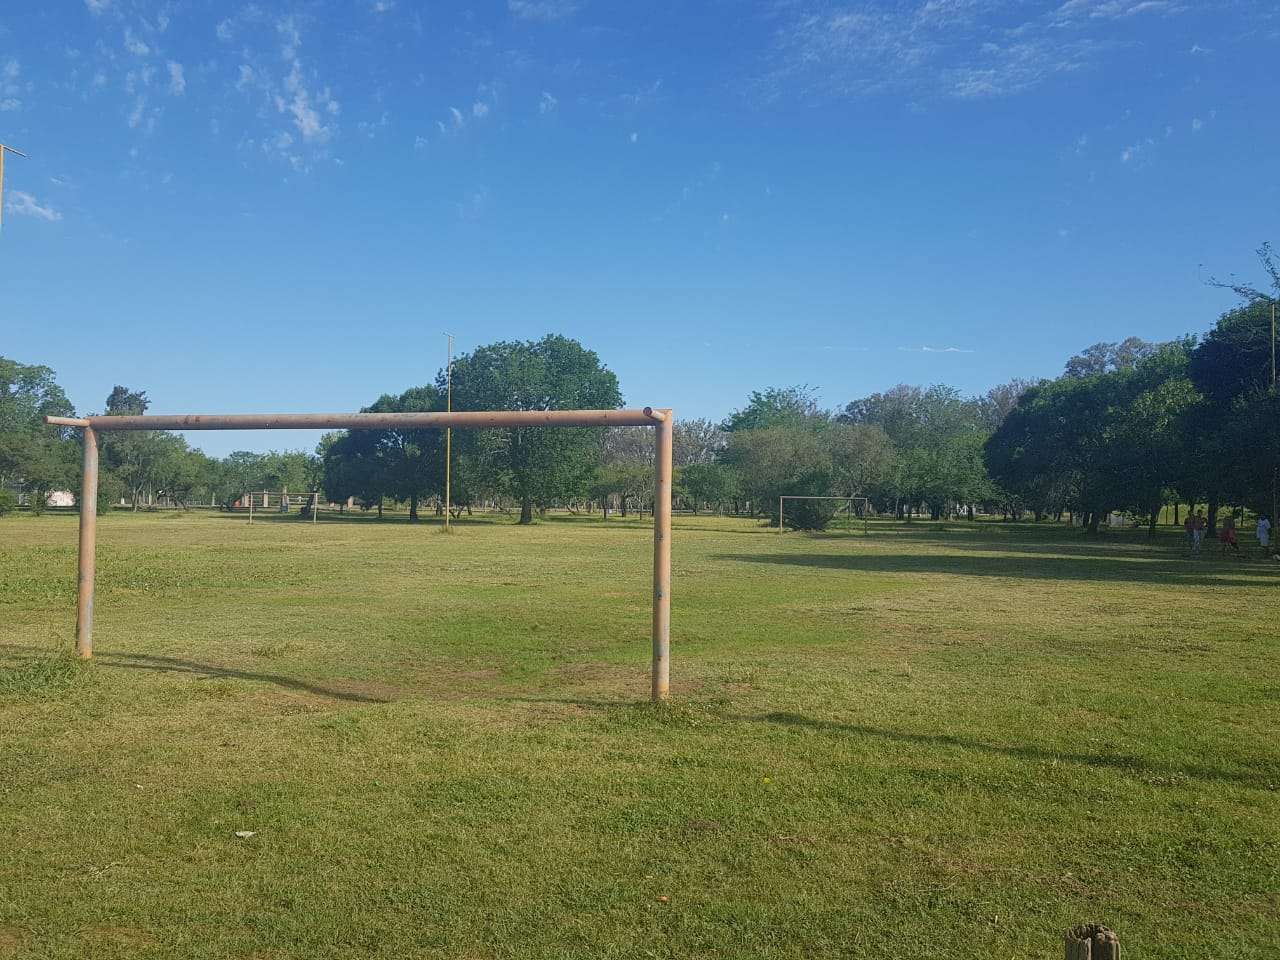 Proponen llamar "Diego Armando Maradona" a las canchas de fútbol del Parque Unzué